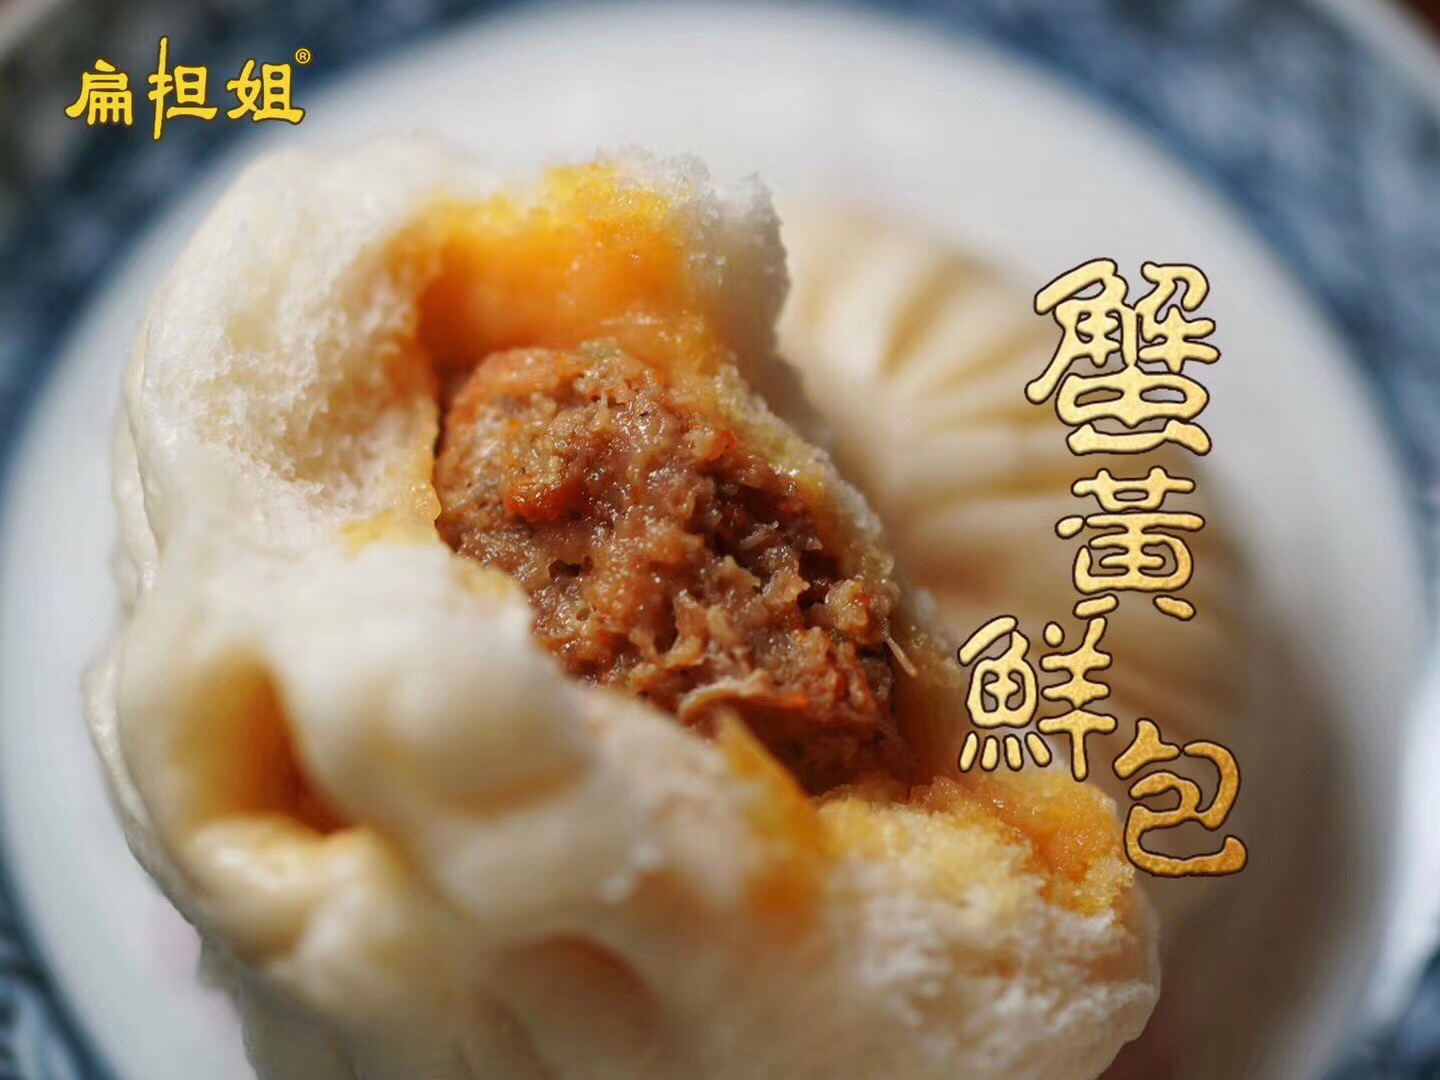 「春季新品」扬州名吃蟹黄包 入口鲜香多汁 非常鲜 非